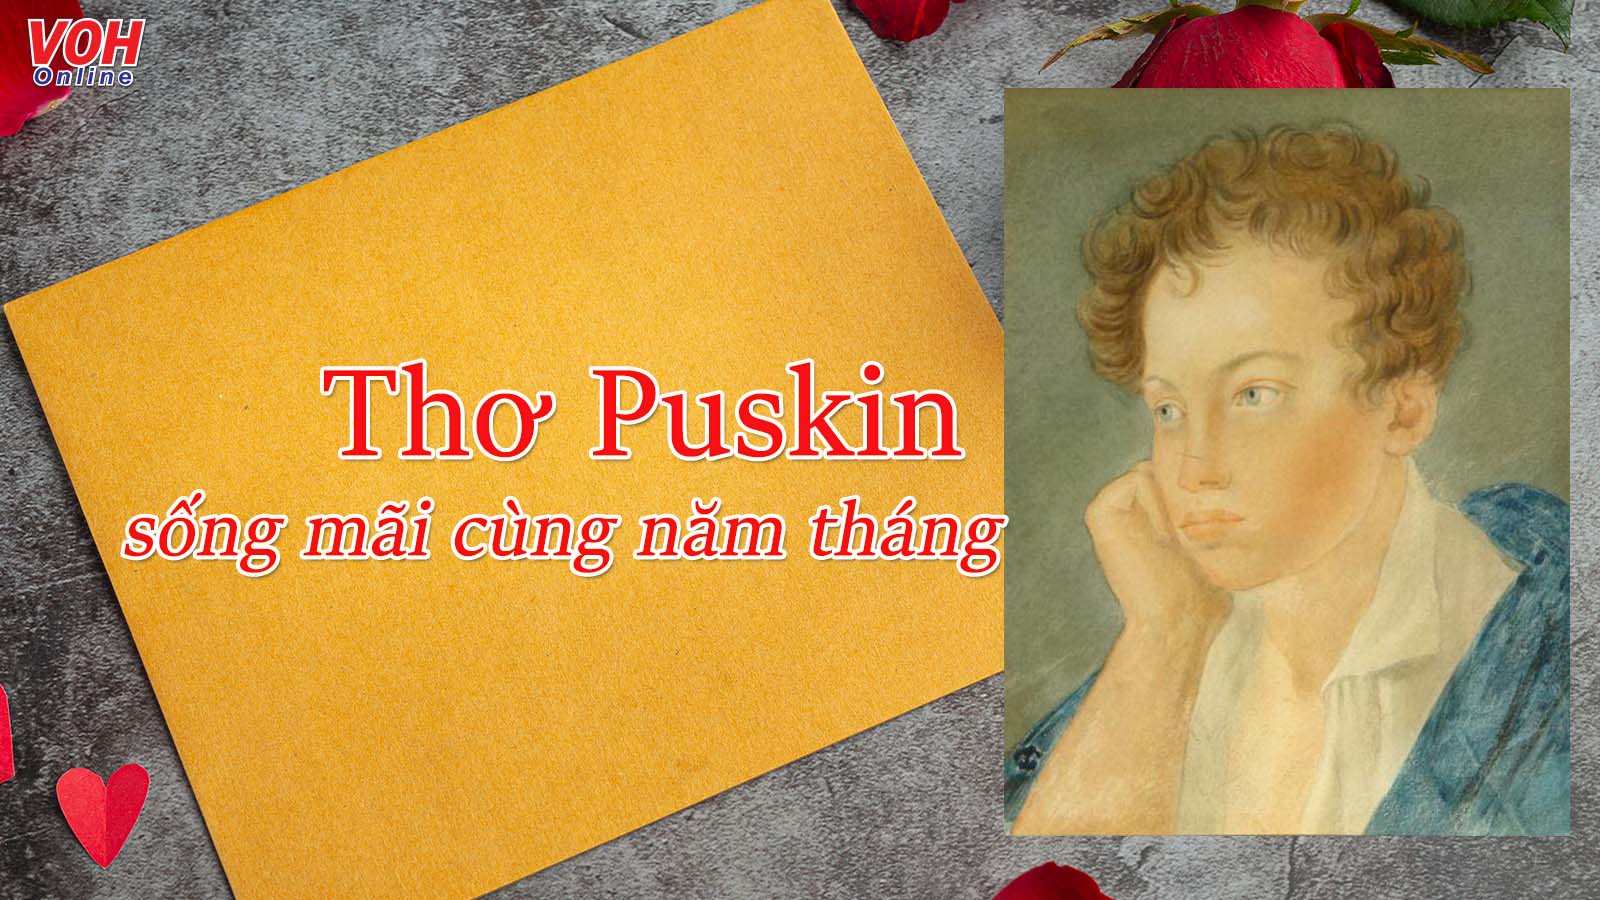 Thơ Puskin - tuyển tập 24 bài thơ đi cùng năm tháng